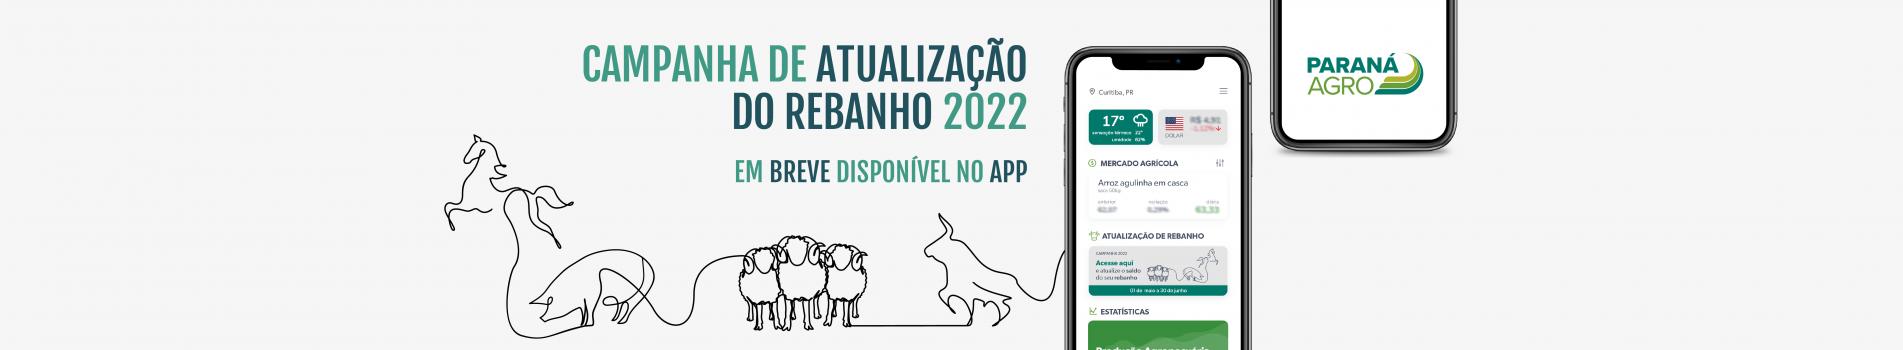 Em breve está disponível na loja Google Play o App de Atualização de Rebanho do Paraná